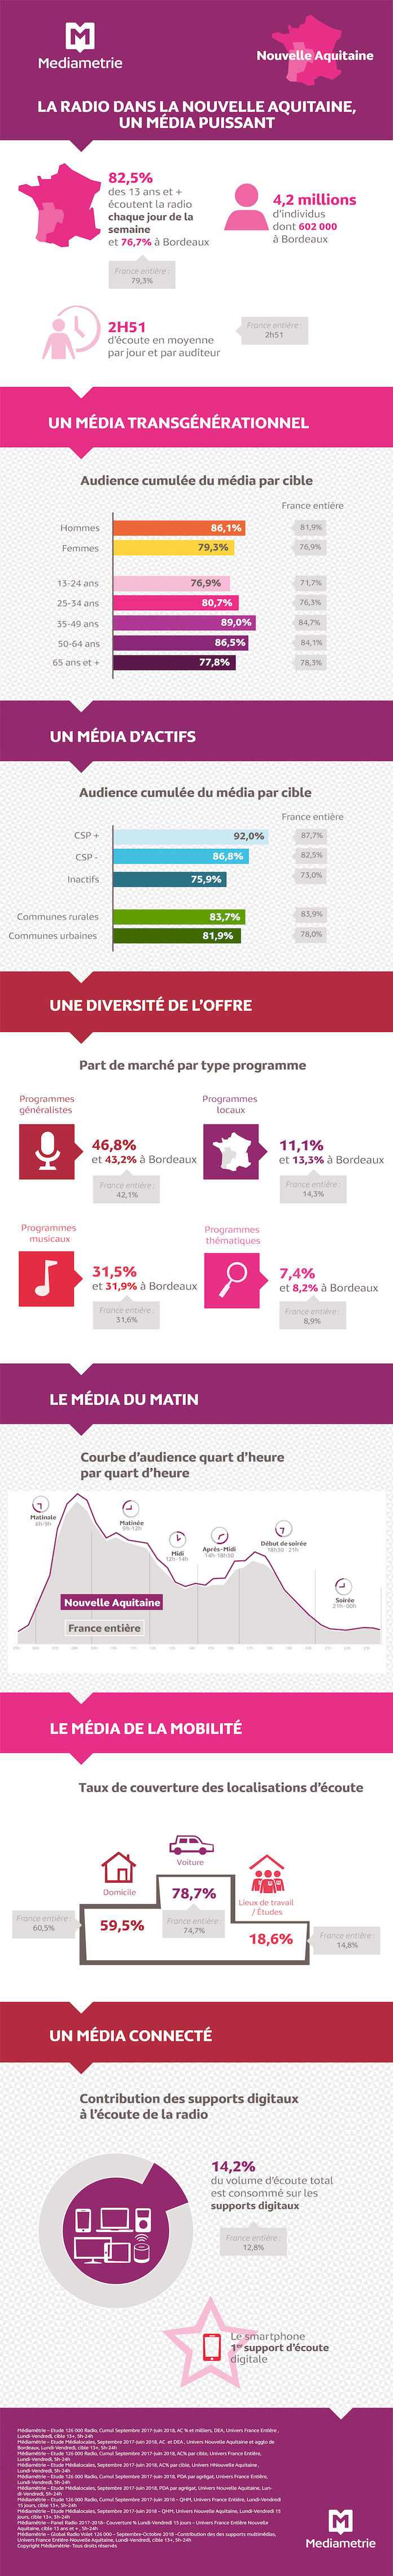 En Nouvelle-Aquitaine, la radio est un "média puissant"